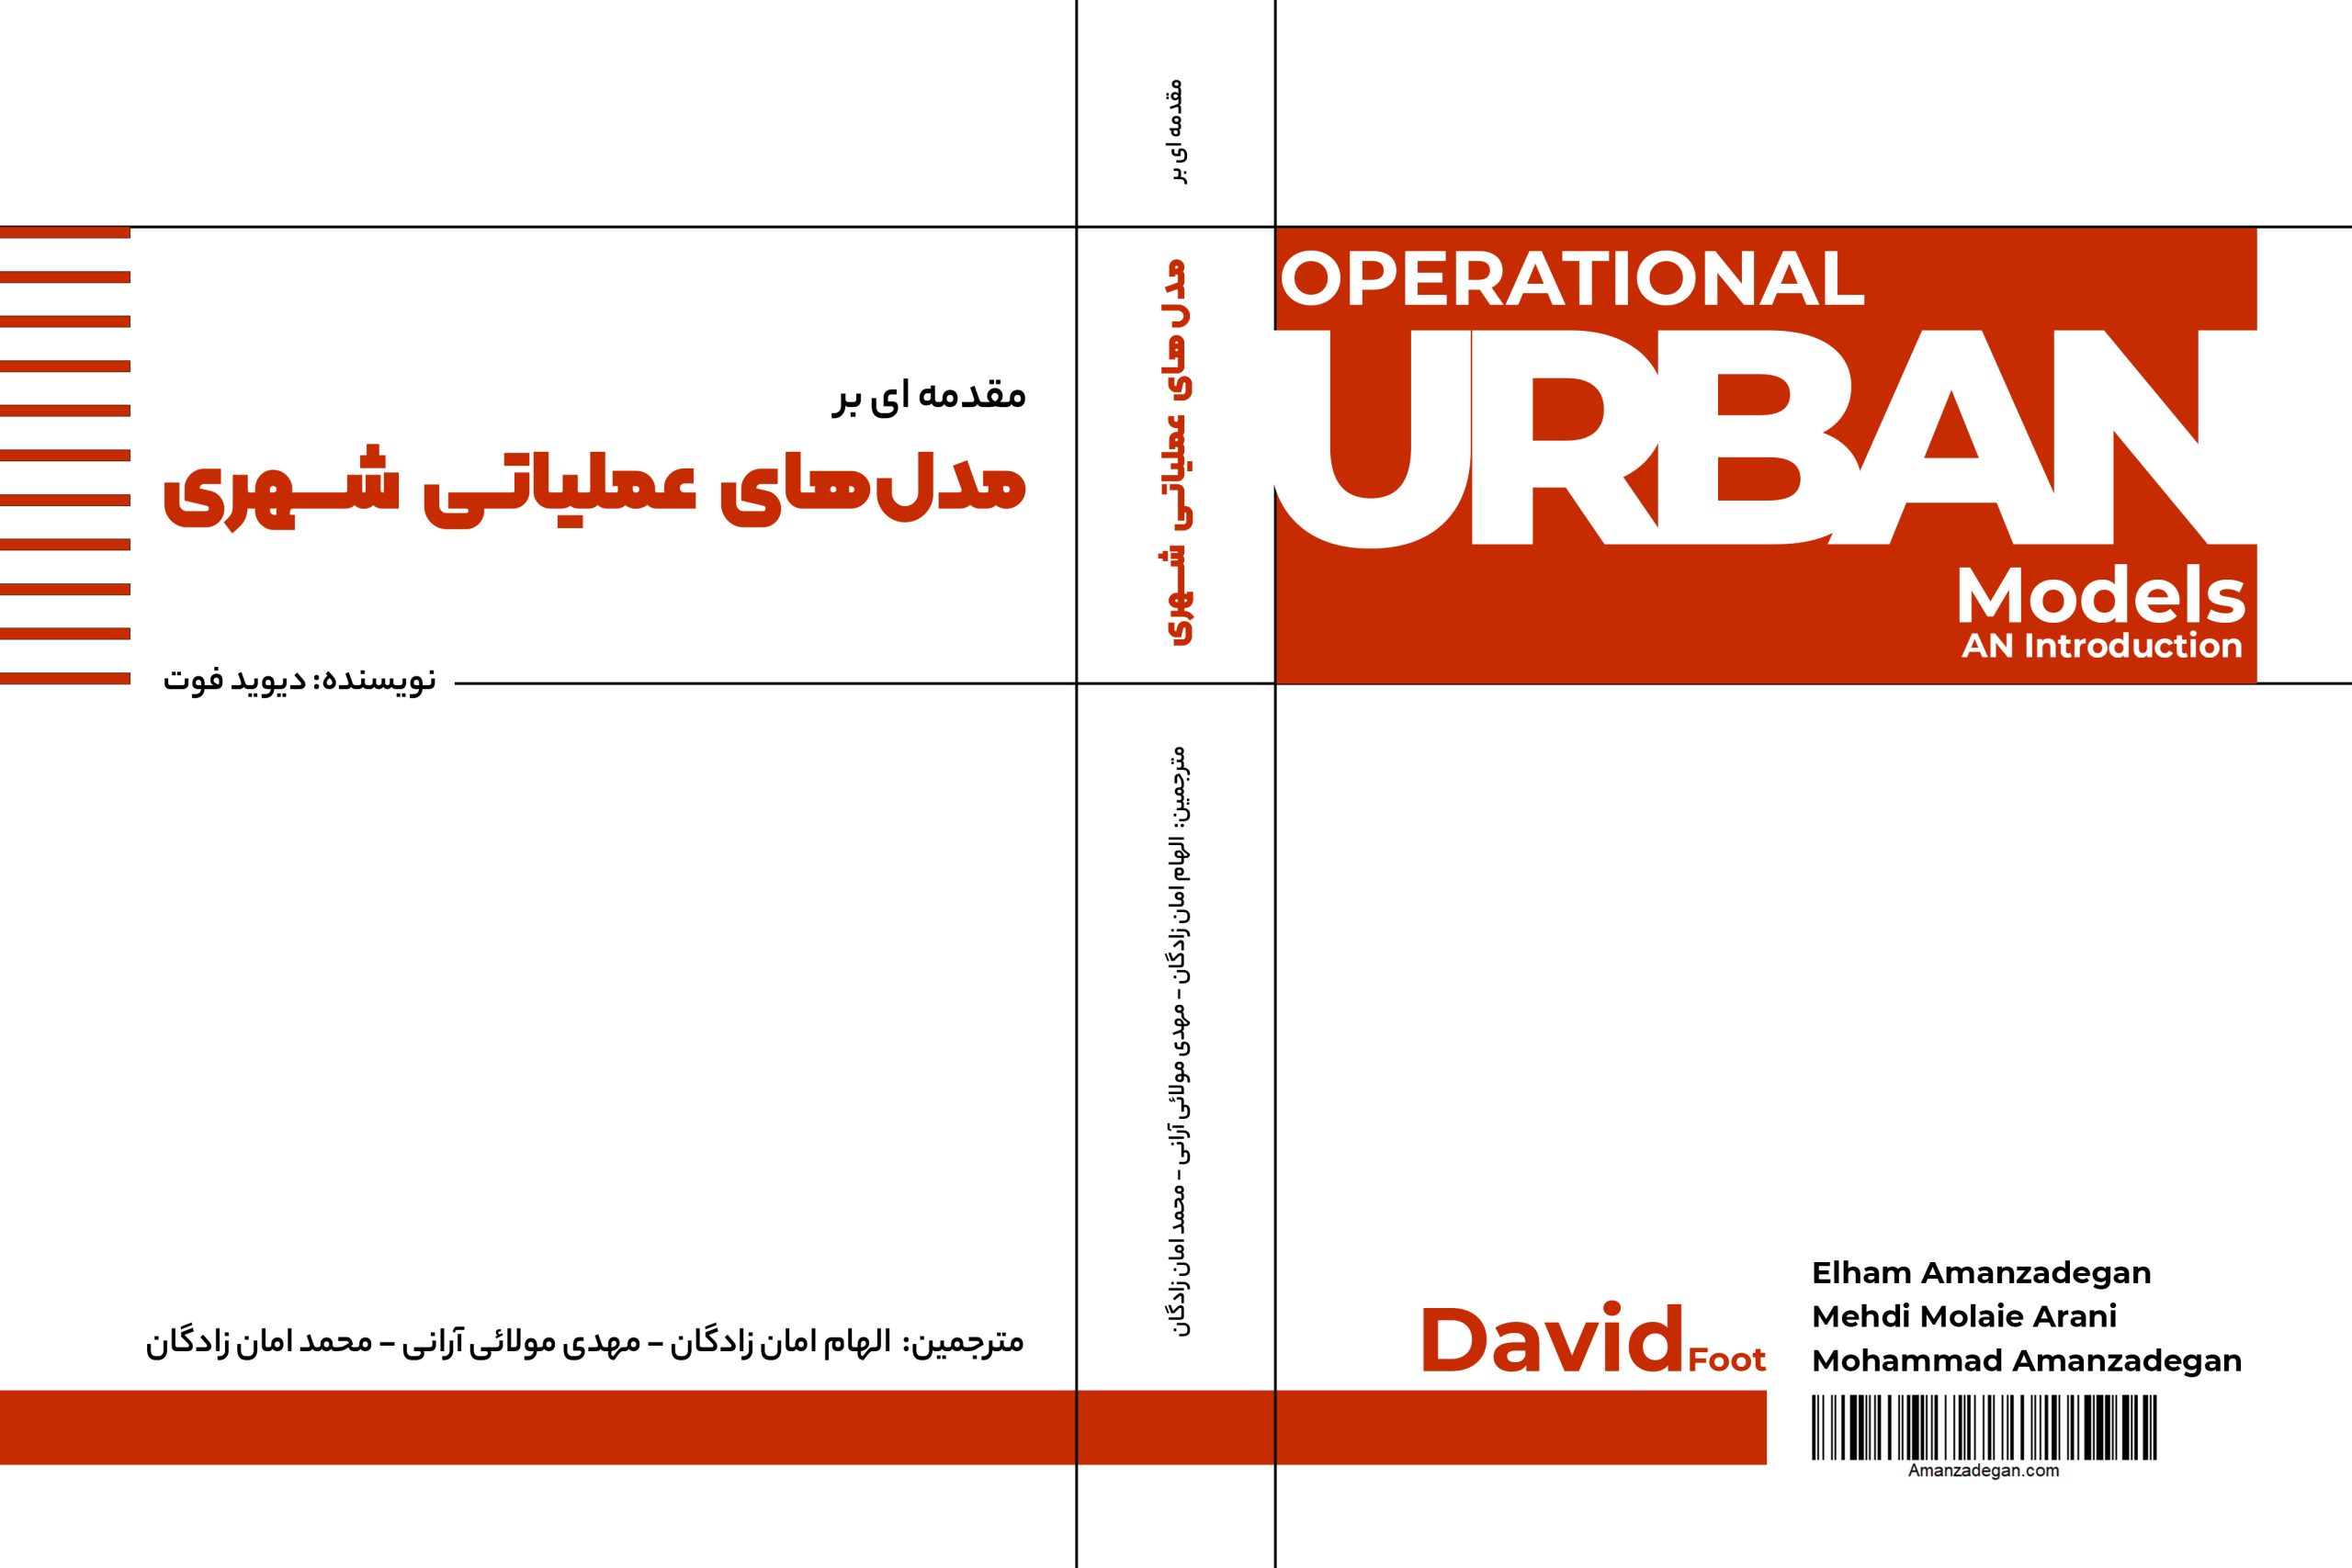 کتاب مقدمه ای بر مدل های عملیاتی شهری نویسنده دیوید فوت